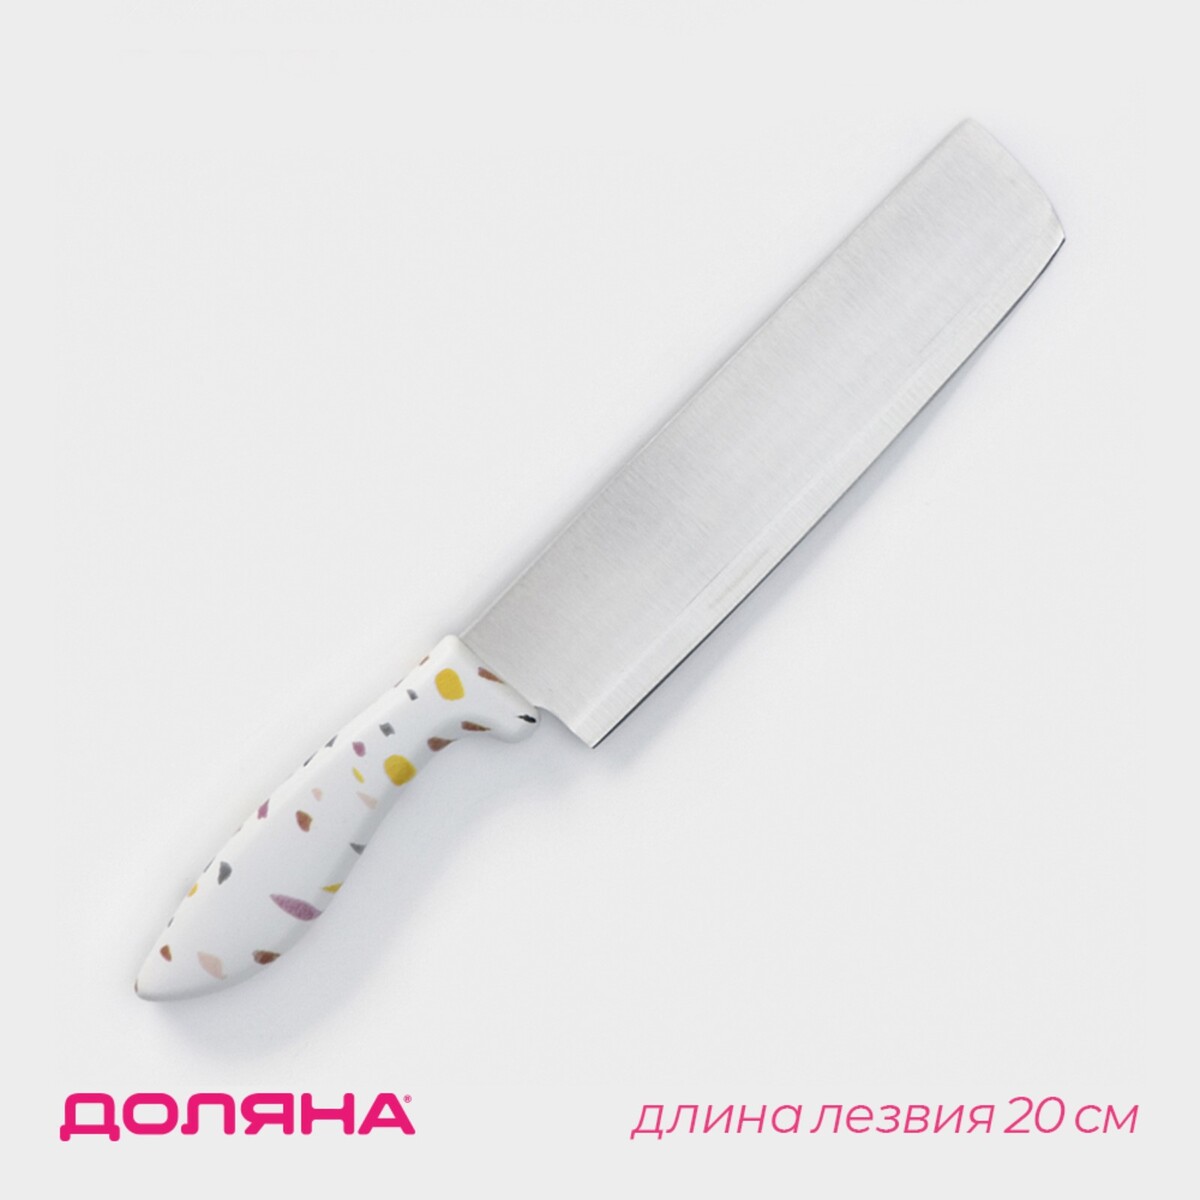 Нож - топорик кухонный доляна sparkle, лезвие 20 см, цвет белый нож кухонный универсальный доляна sparkle лезвие 12 5 см белый